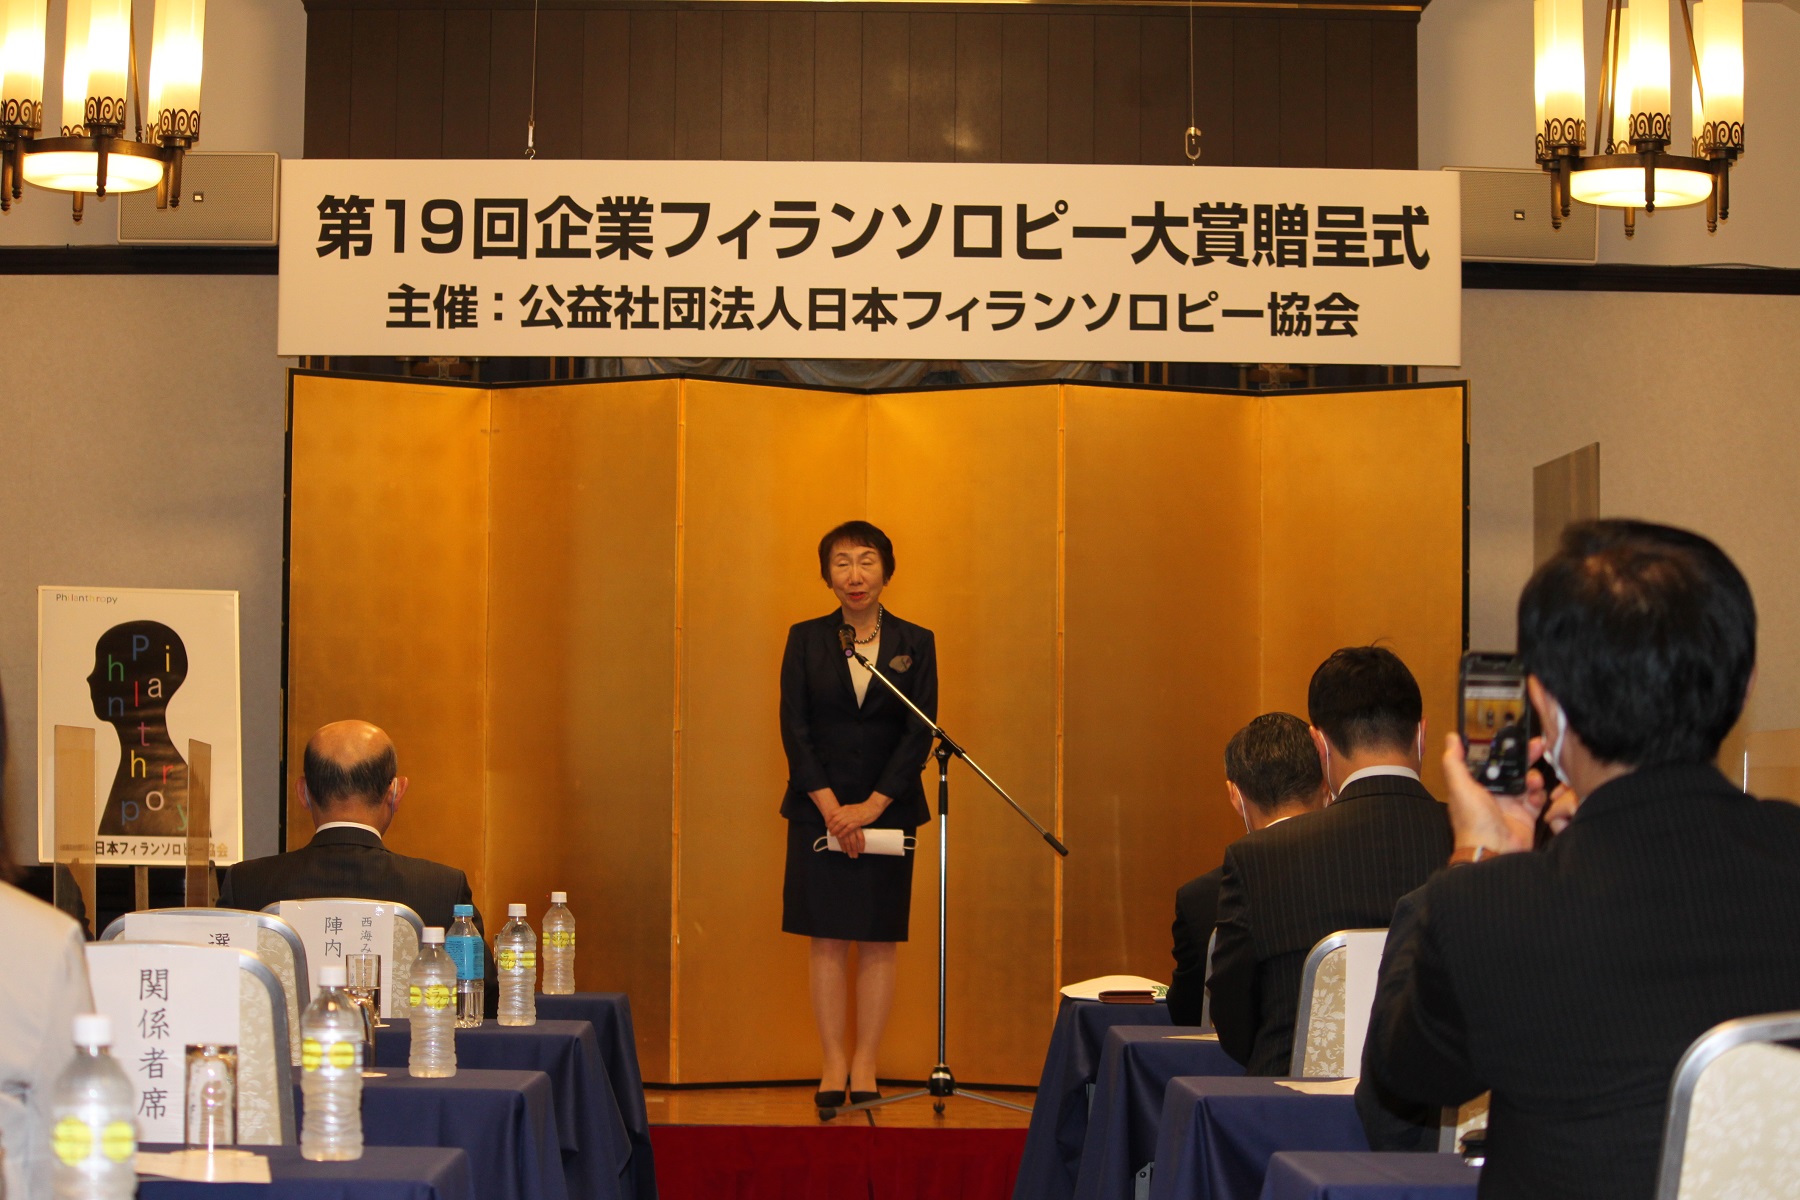 2022年5月に行われた贈呈式で挨拶をする日本フィランソロピー協会の髙橋陽子理事長